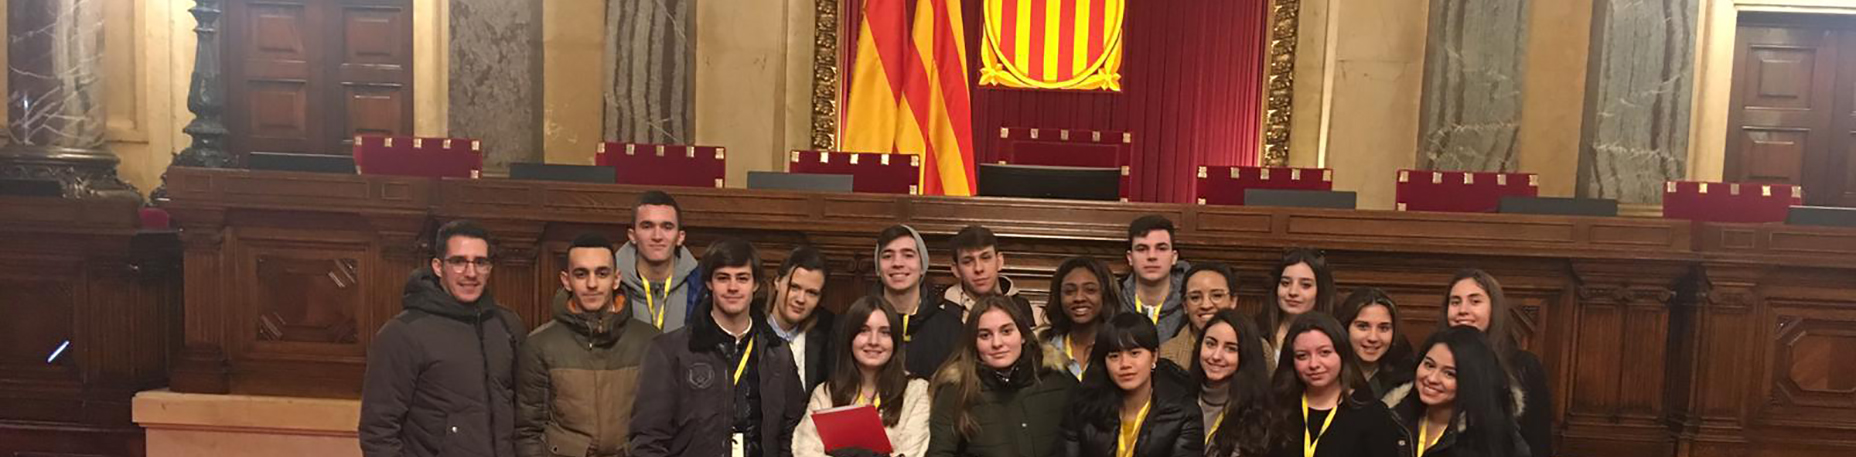 Visita al Parlament de Catalunya dels estudiants de CFGS | Escola Universitària Formatic Barcelona